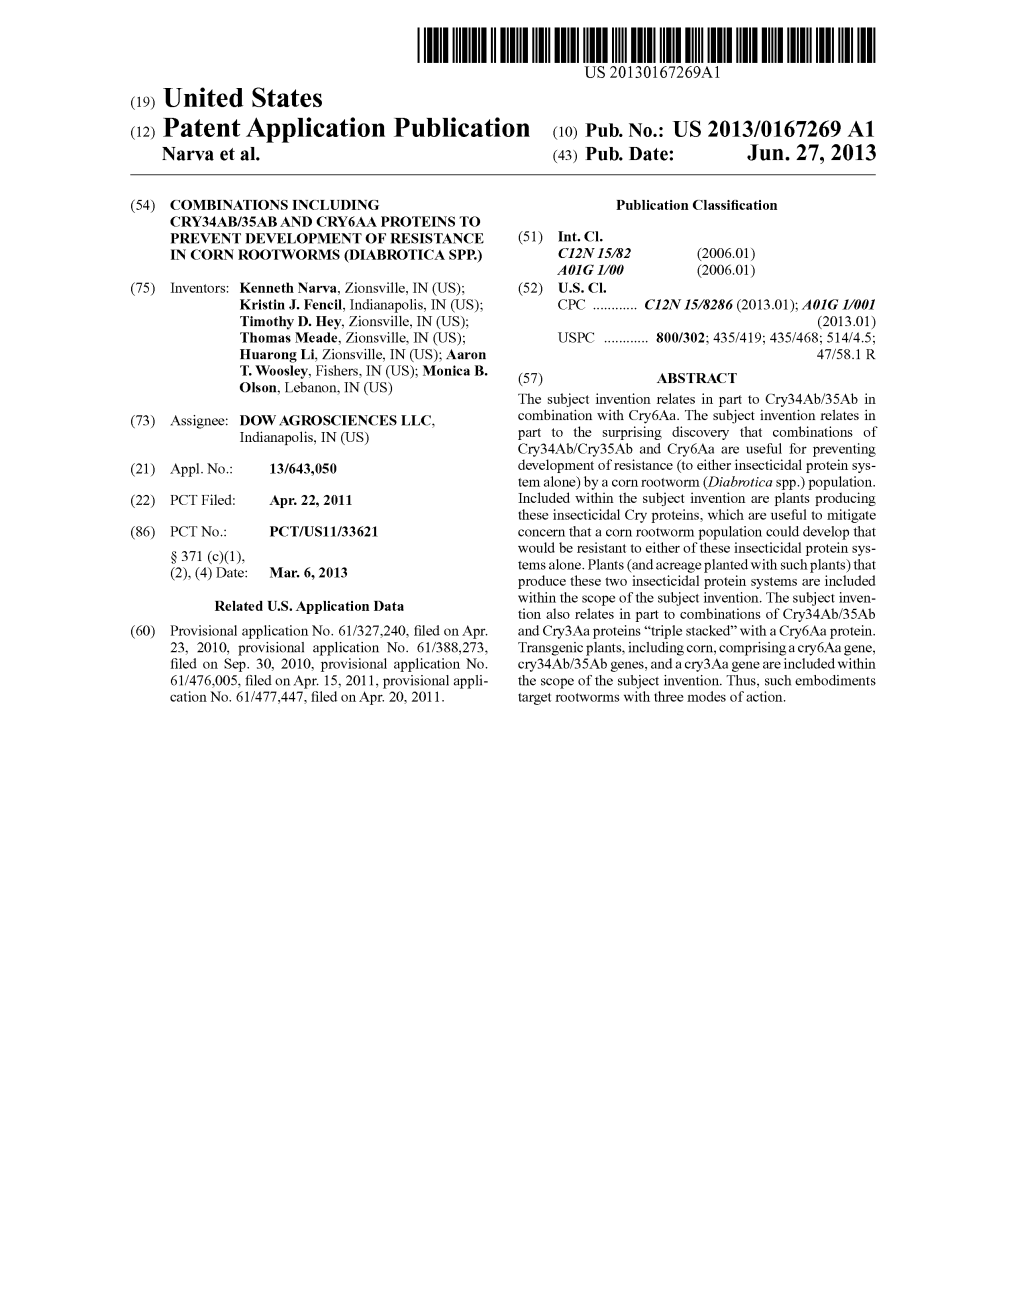 (12) Patent Application Publication (10) Pub. No.: US 2013/0167269 A1 Narva Et Al